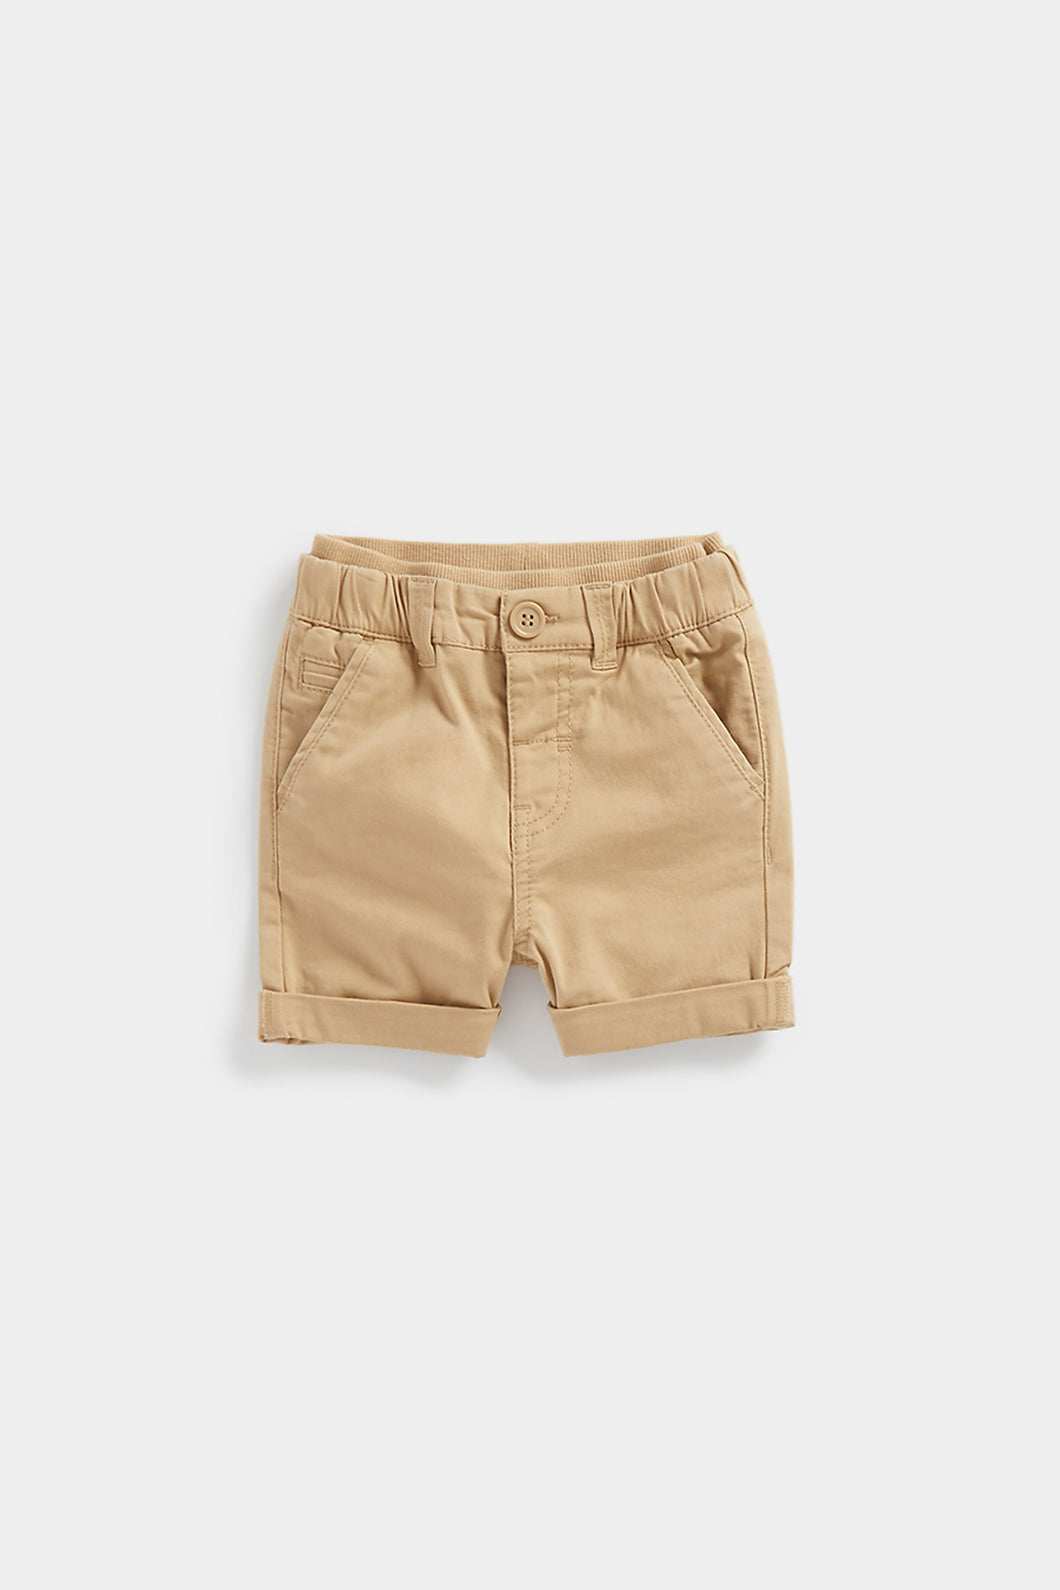 Mothercare Tan Chino Shorts